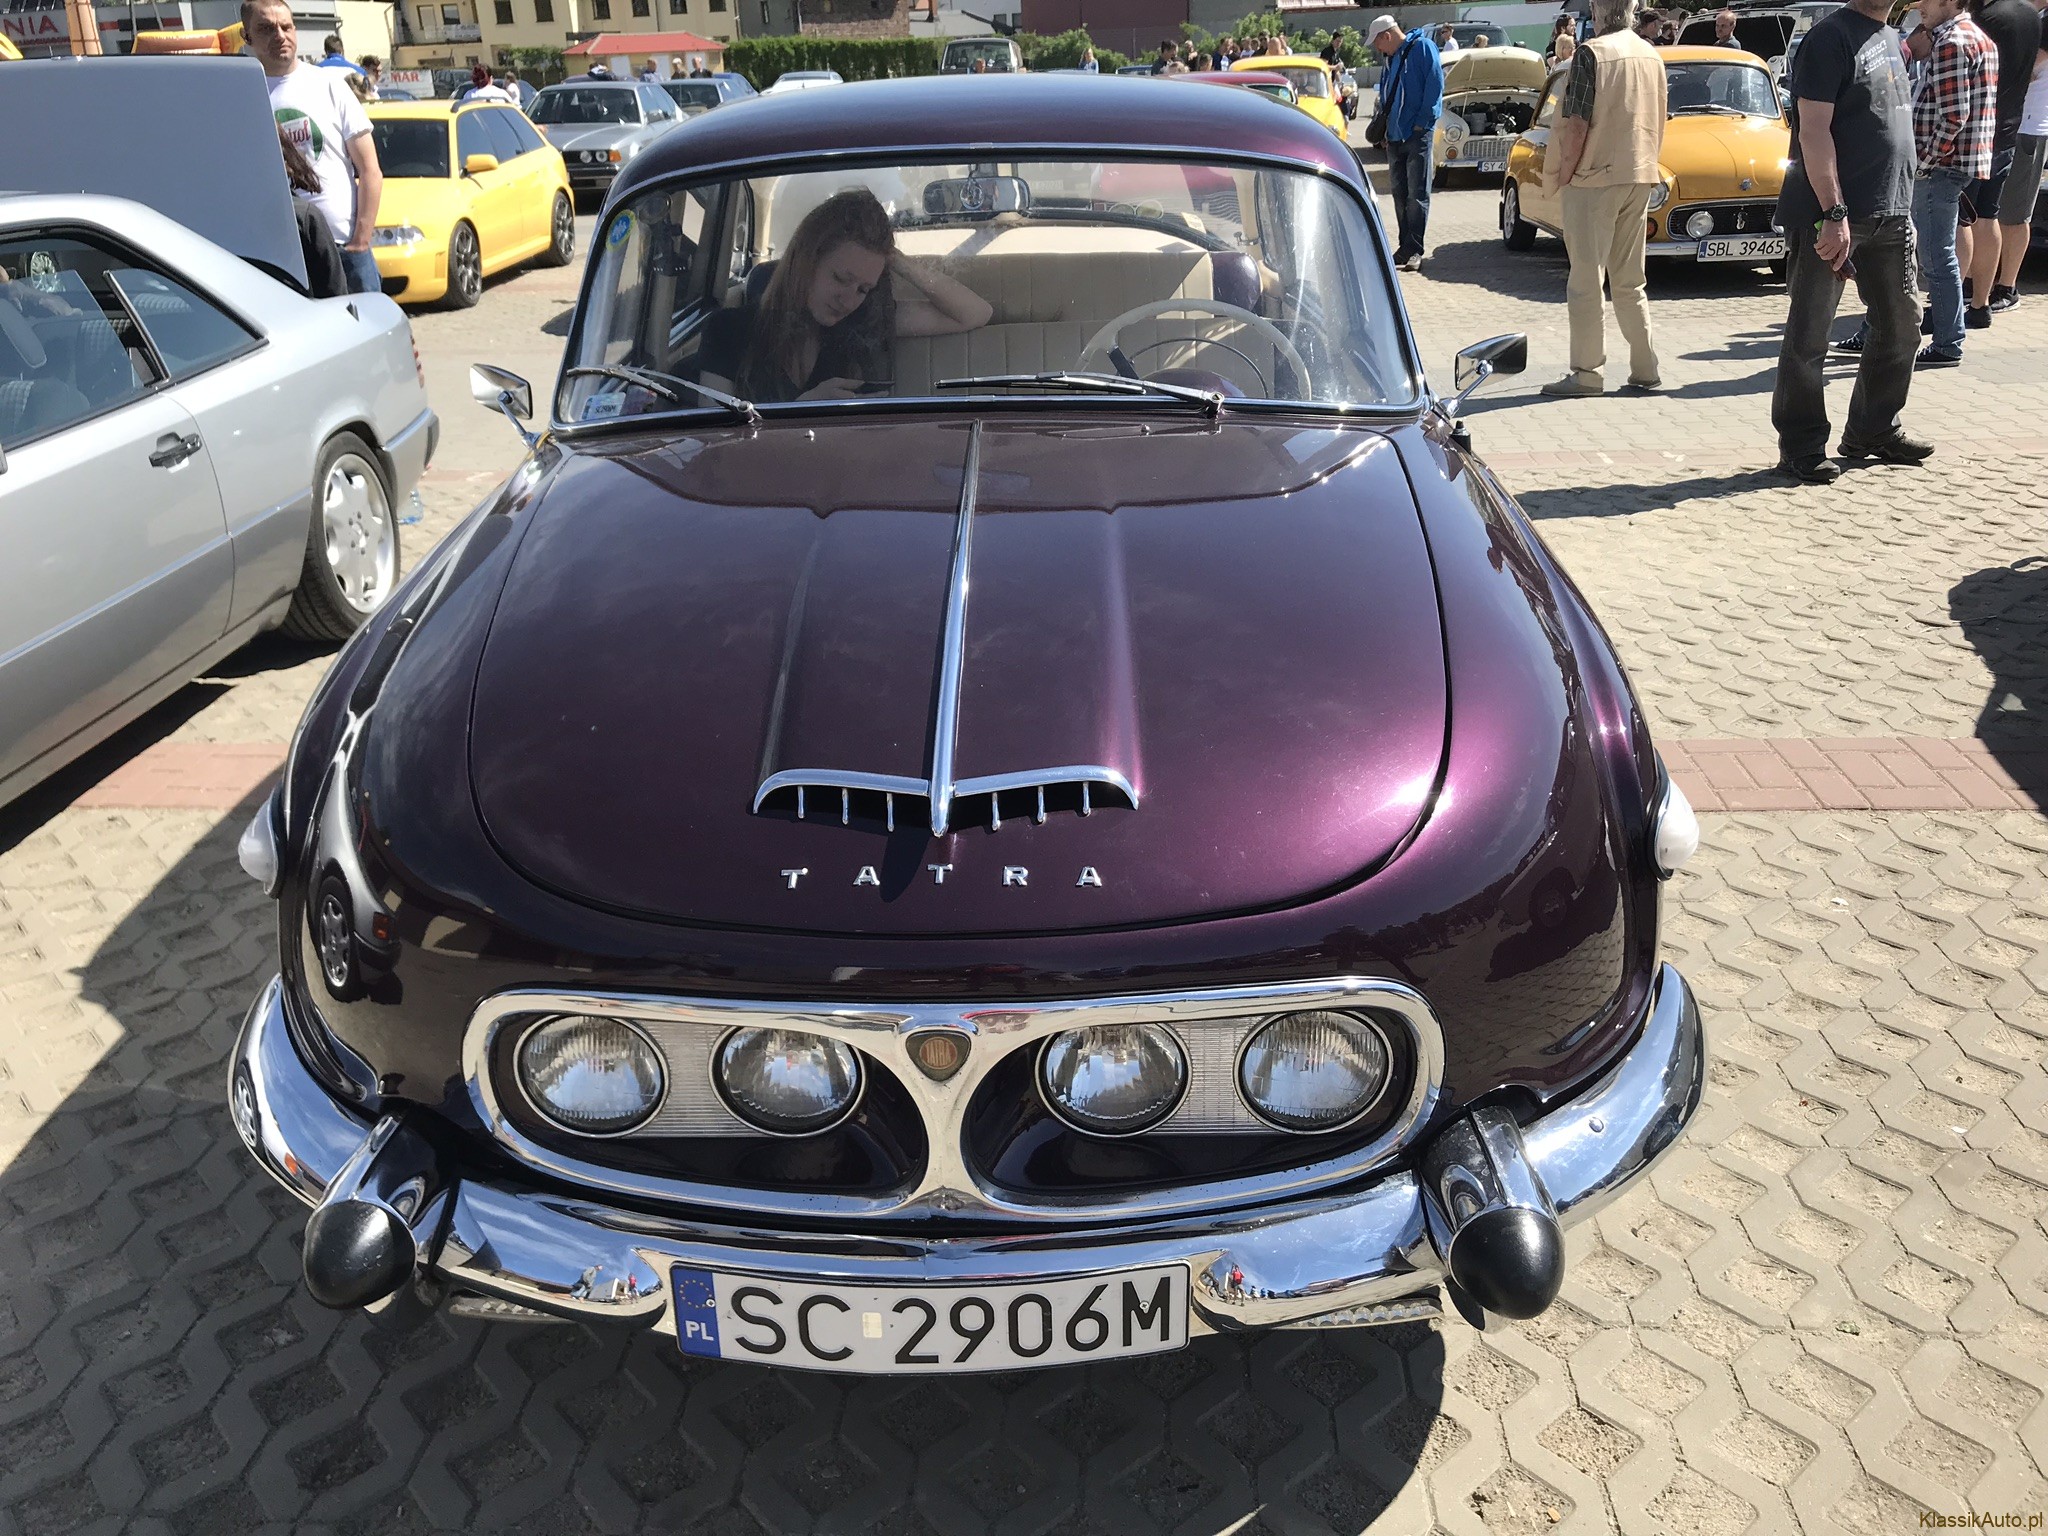 Tatra 603